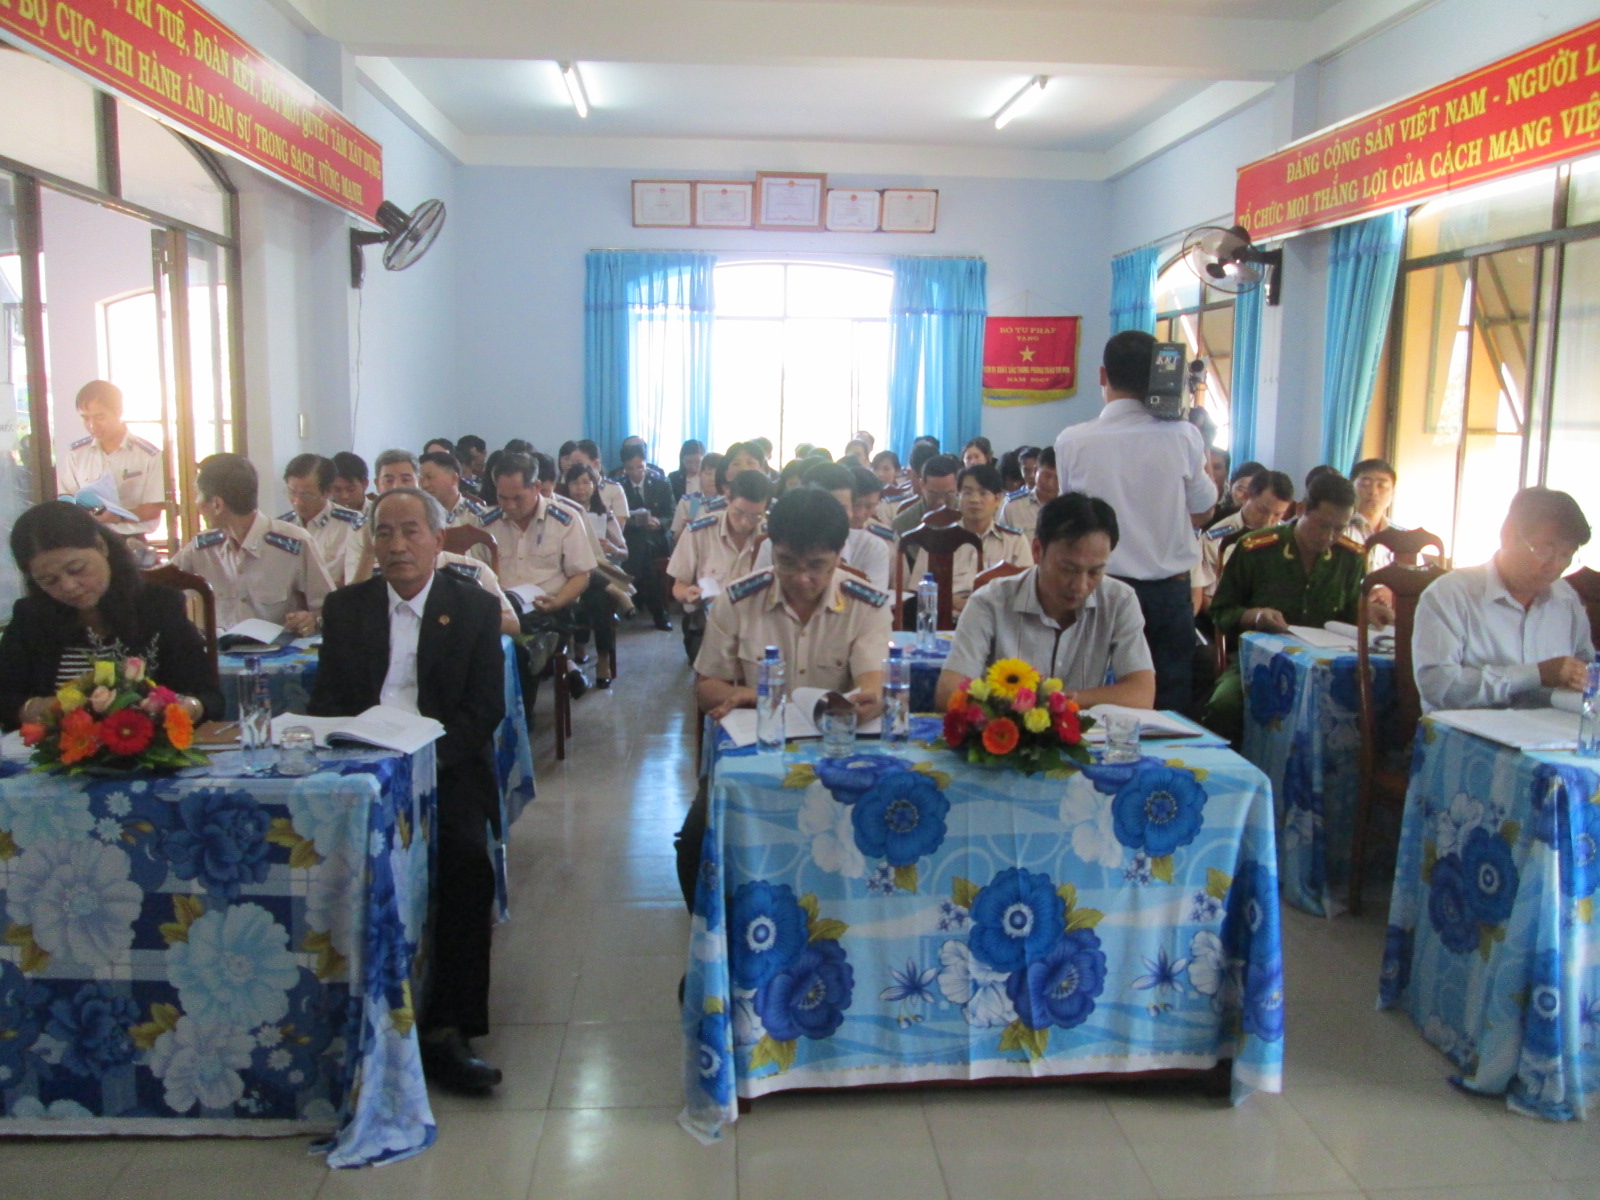 Cục Thi hành án dân sự tỉnh Kon Tum tổ chức Hội nghị triển khai công tác thi hành án dân sự năm 2016 và tập huấn nghiệp vụ thi hành án dân sự